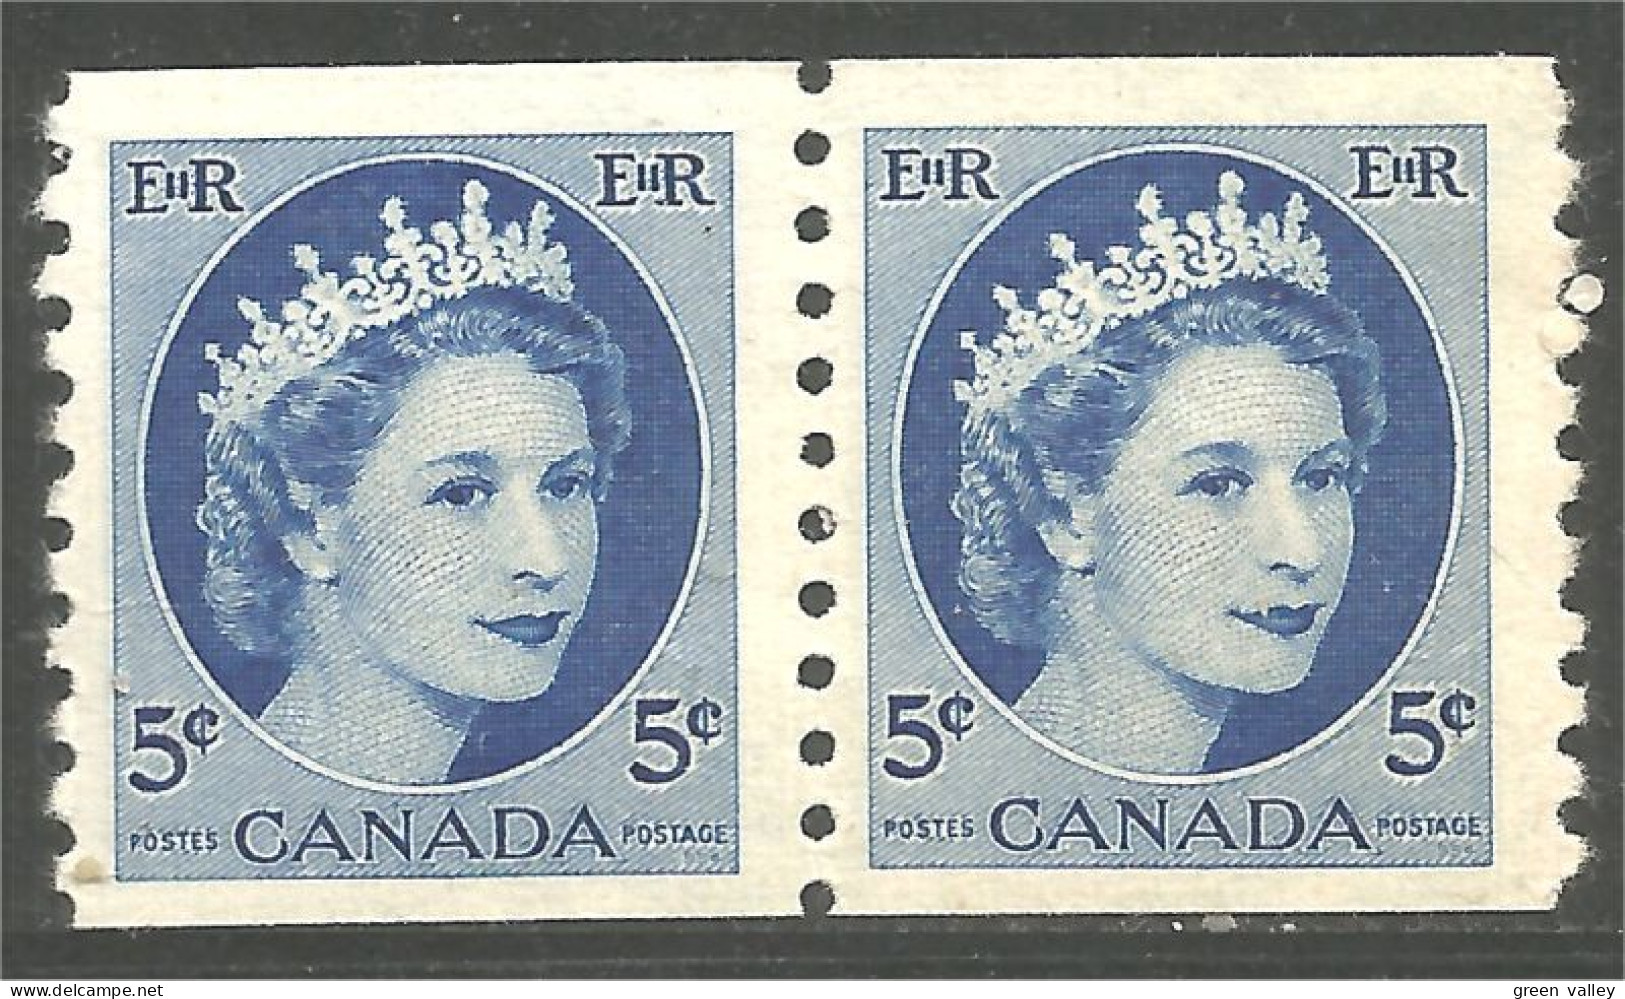 951 Canada 1954 #347 Queen Elizabeth Wilding Portrait 5c Blue Bleu Roulette Coil PAIR **/* (462) - Nuovi